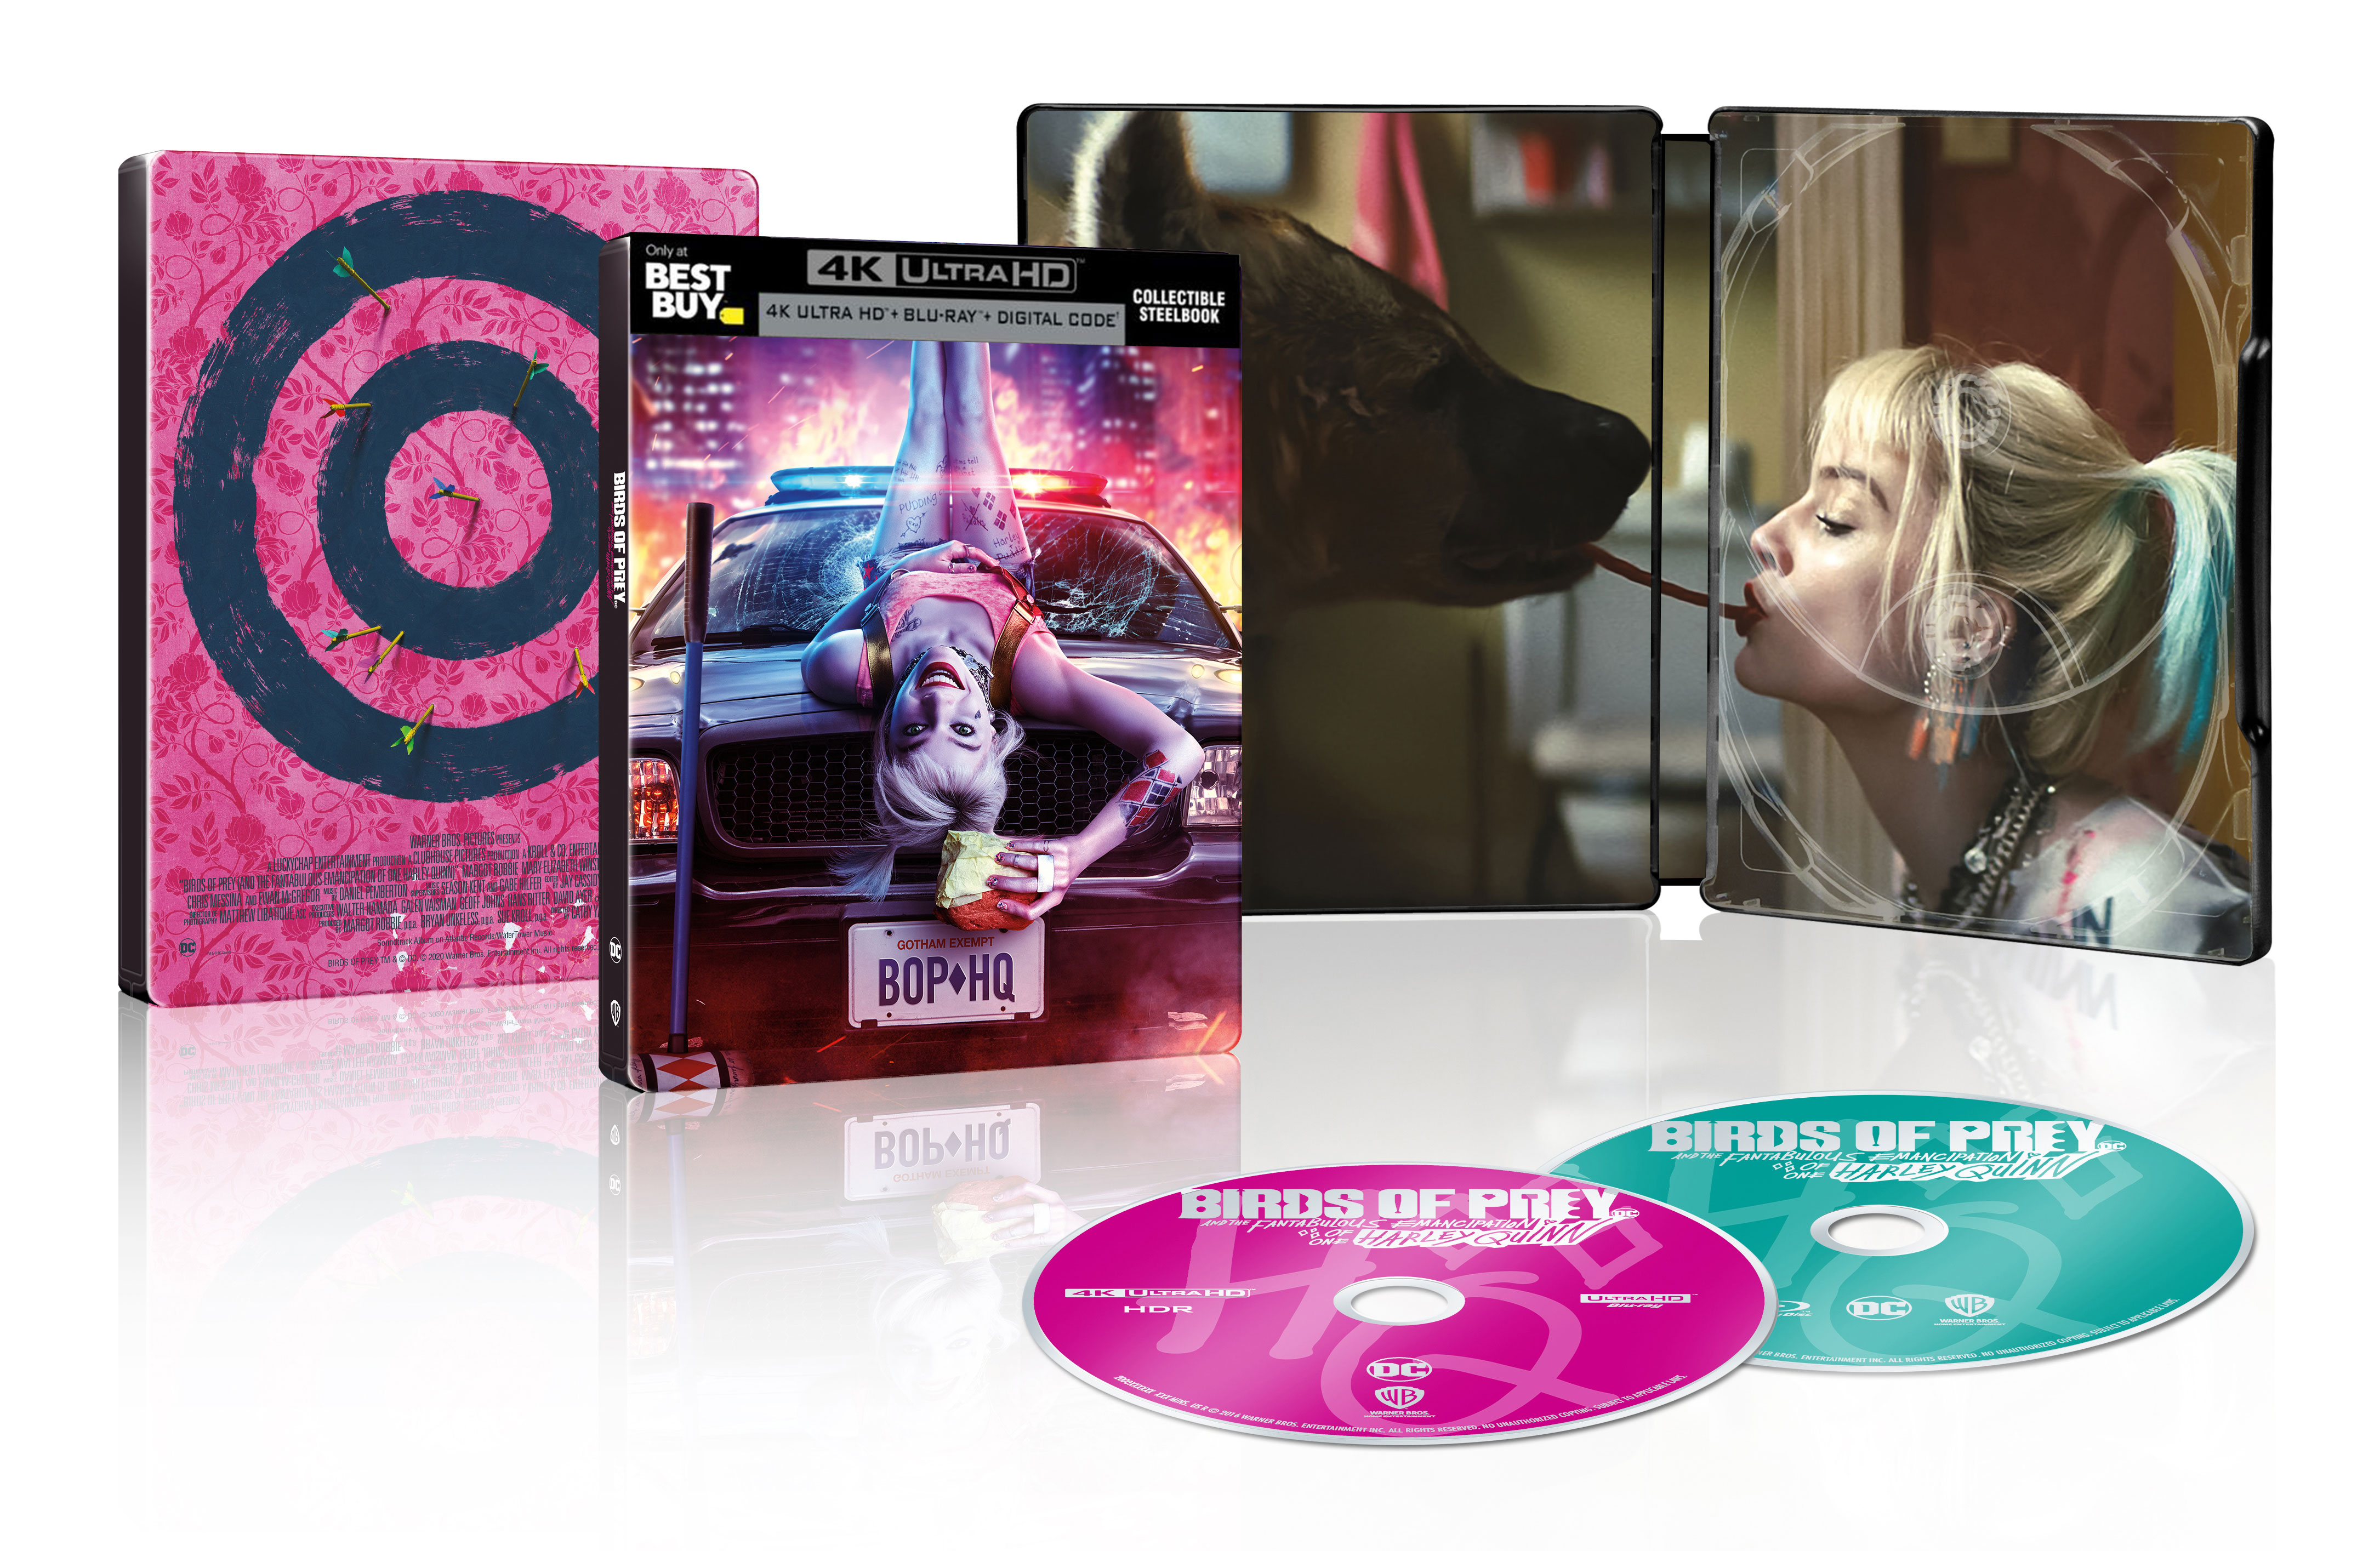 Birds Of Prey Steelbook Includes Digital Copy 4k Ultra Hd Blu Ray Blu Ray Only Best Buy Best Buy